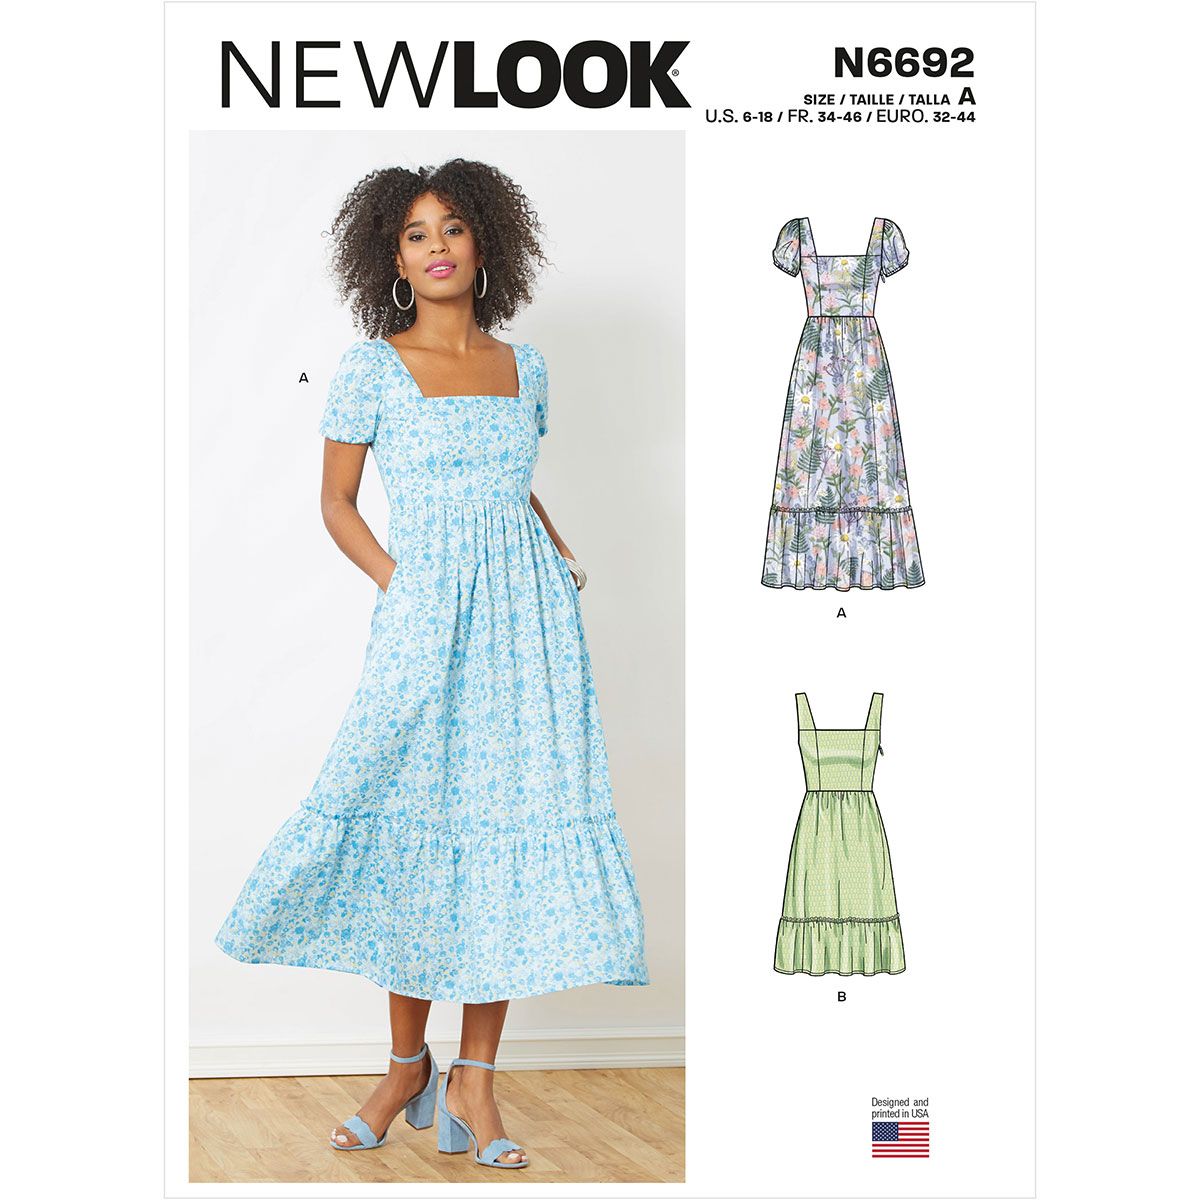 Pattern Review - OOP New Look 6751 - Sew Tessuti Blog